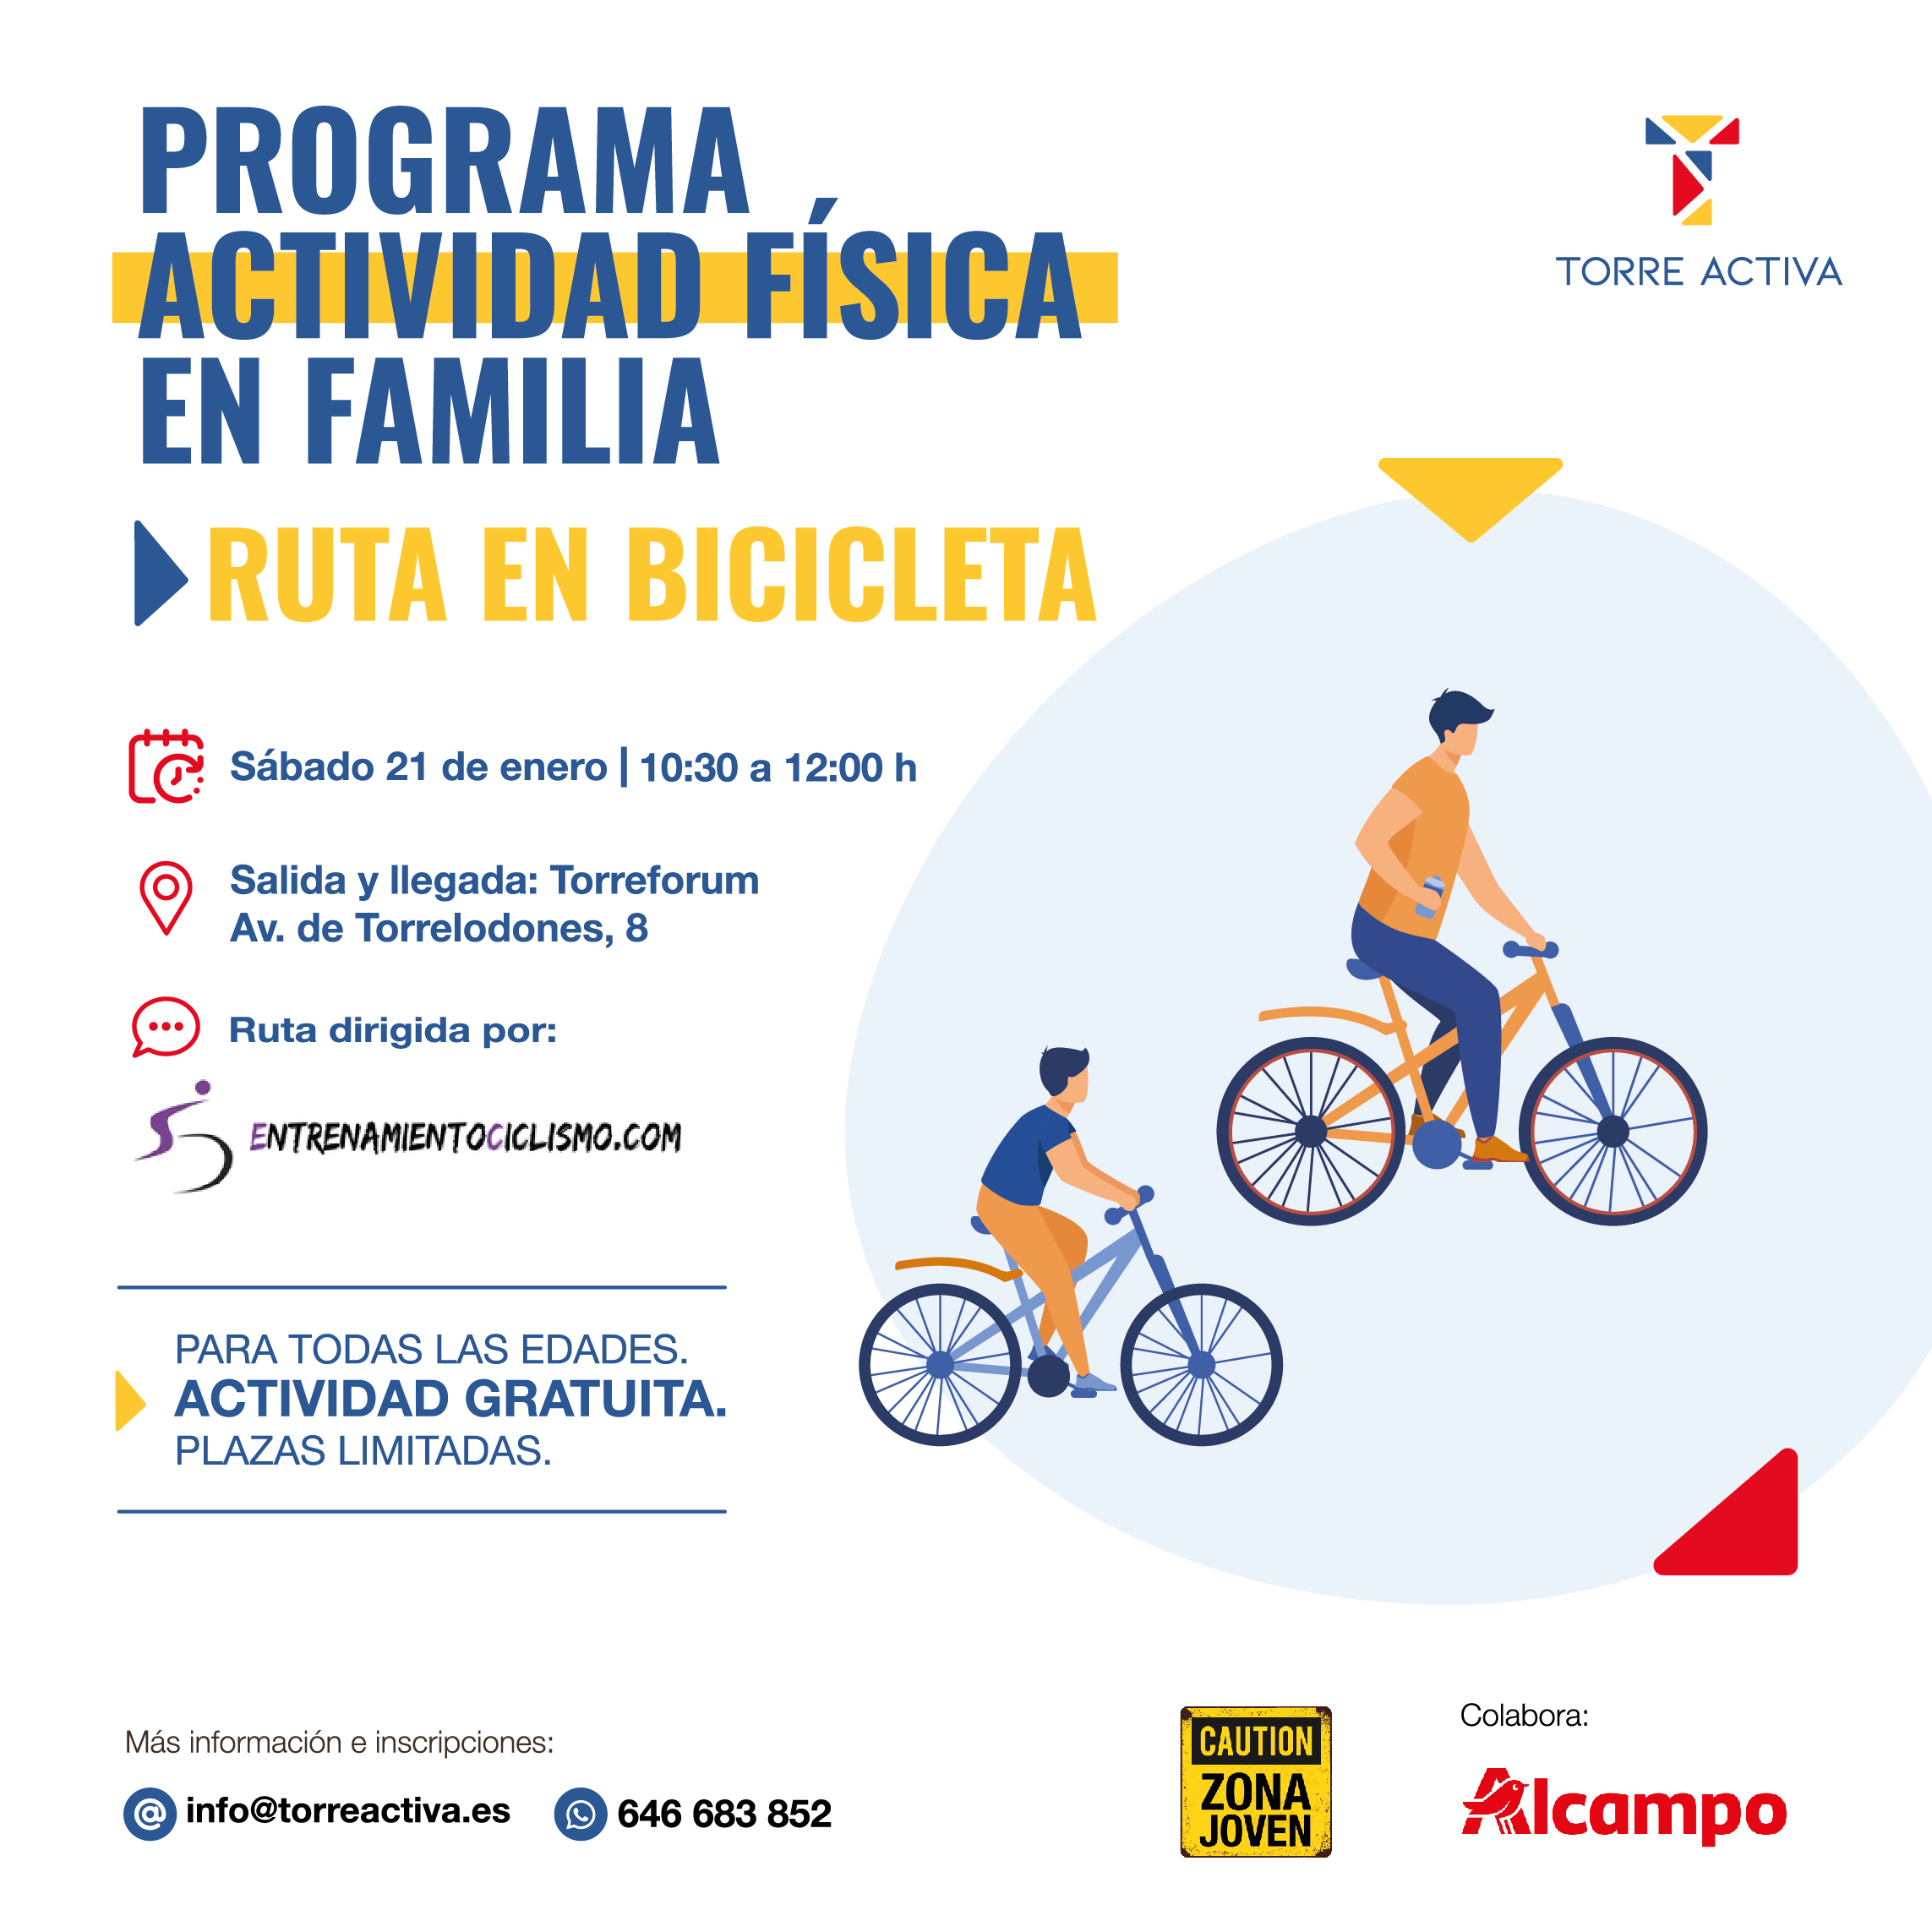  Nueva actividad del Programa Actividad Física en Familia: Ruta en bicicleta